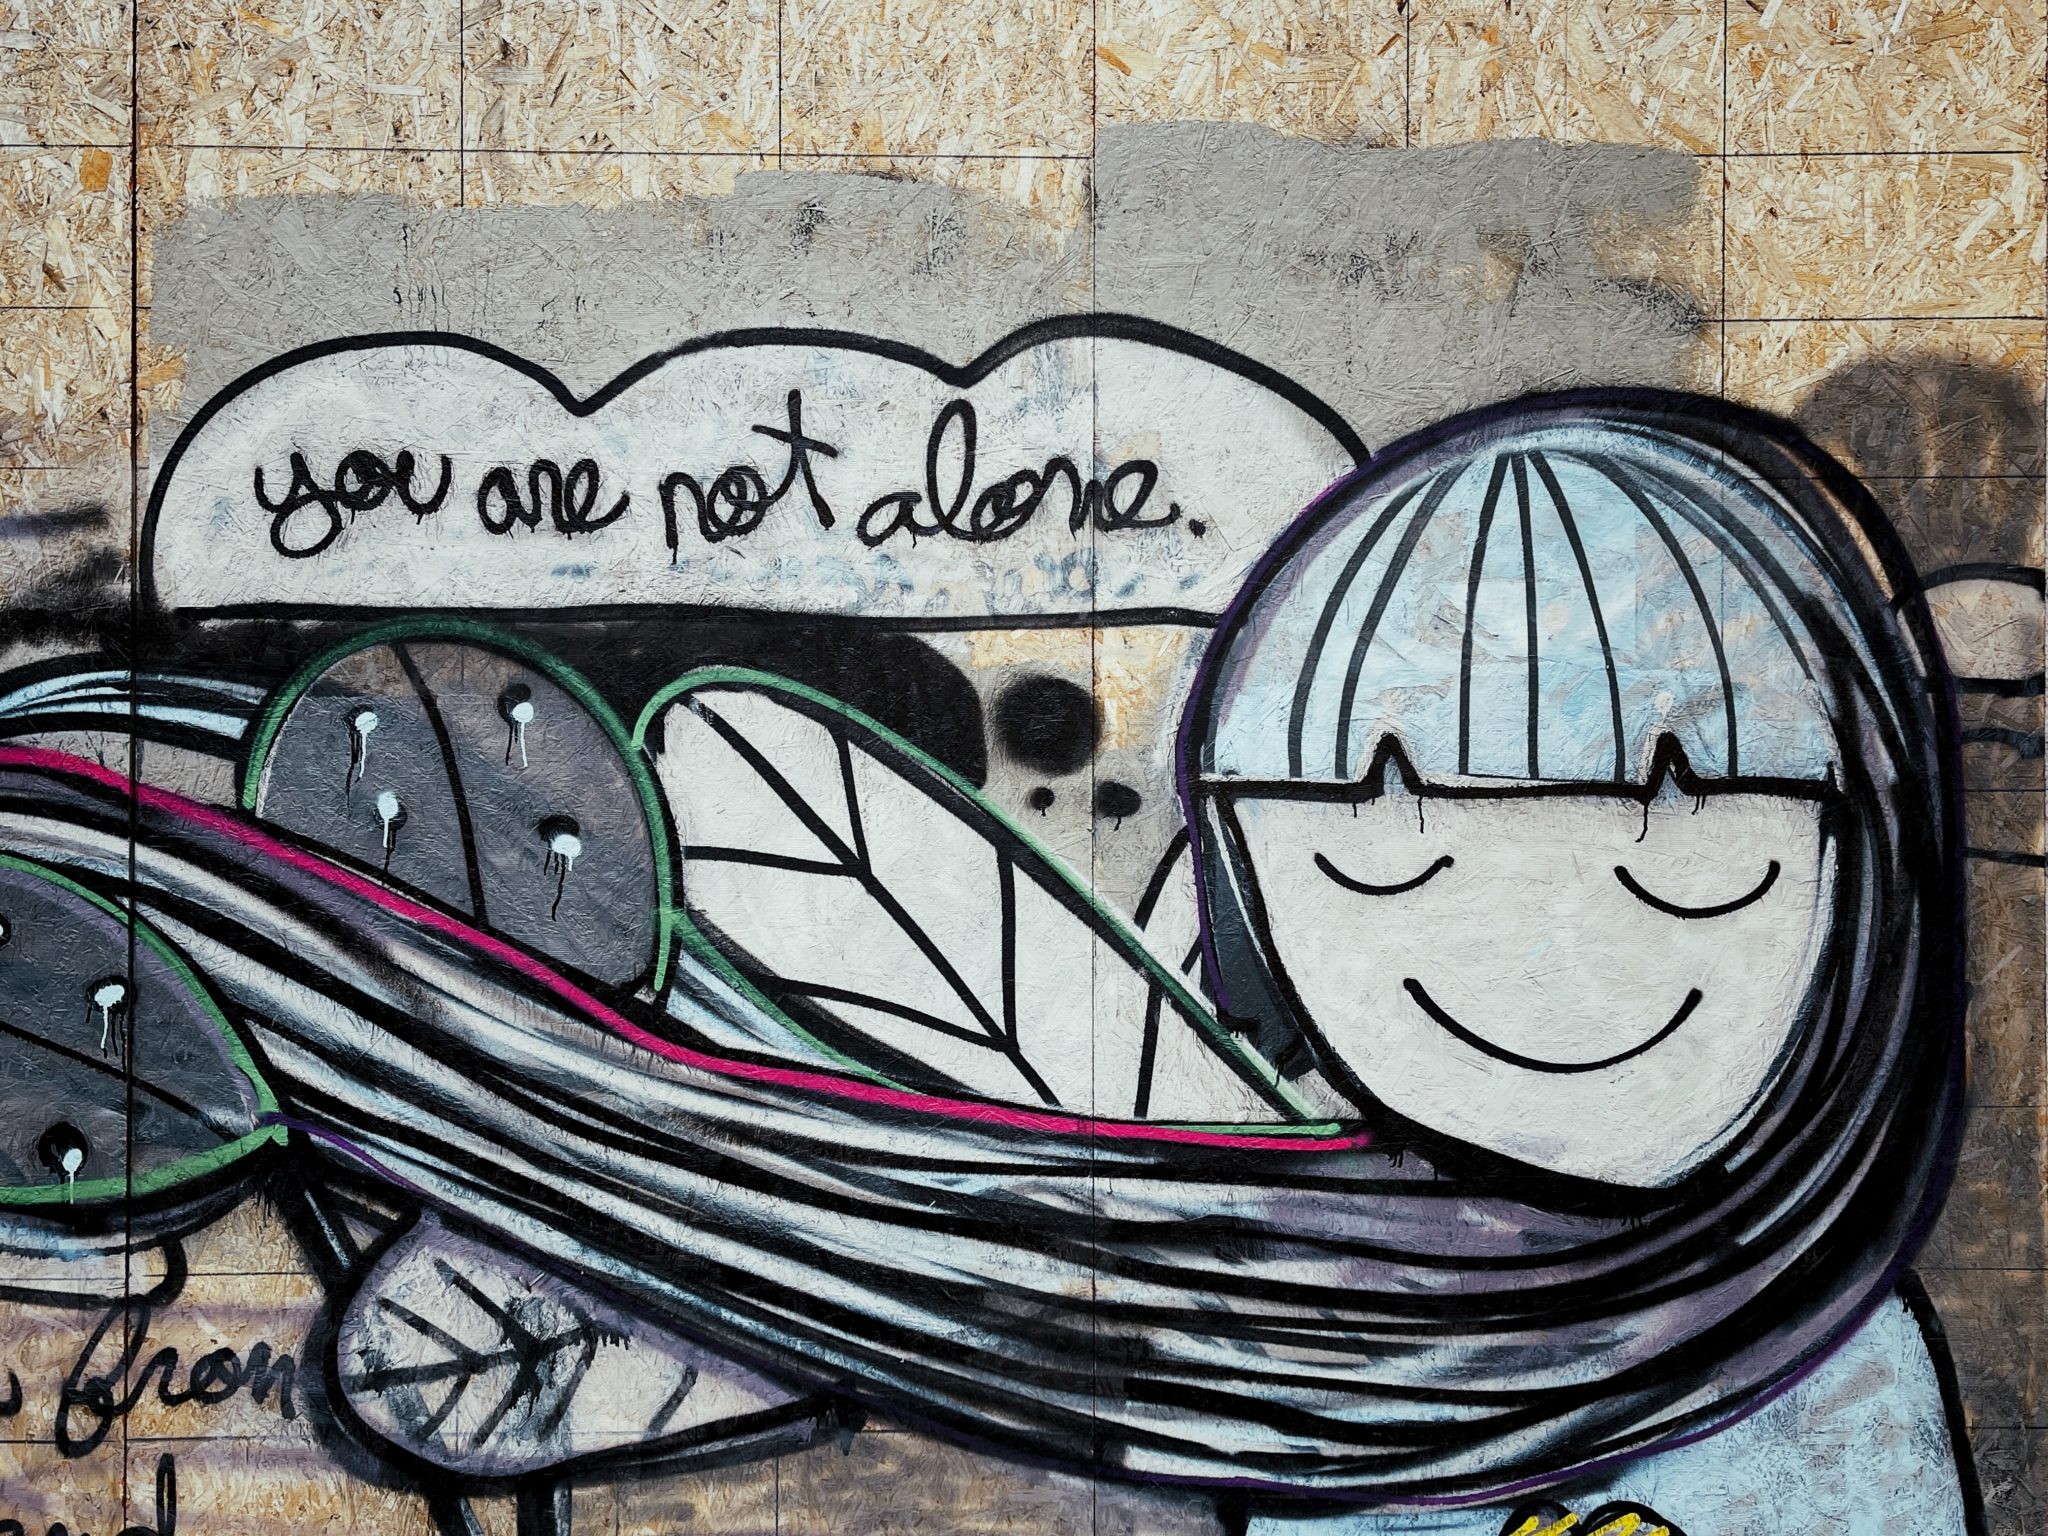 graffiti saying "You are not alone"